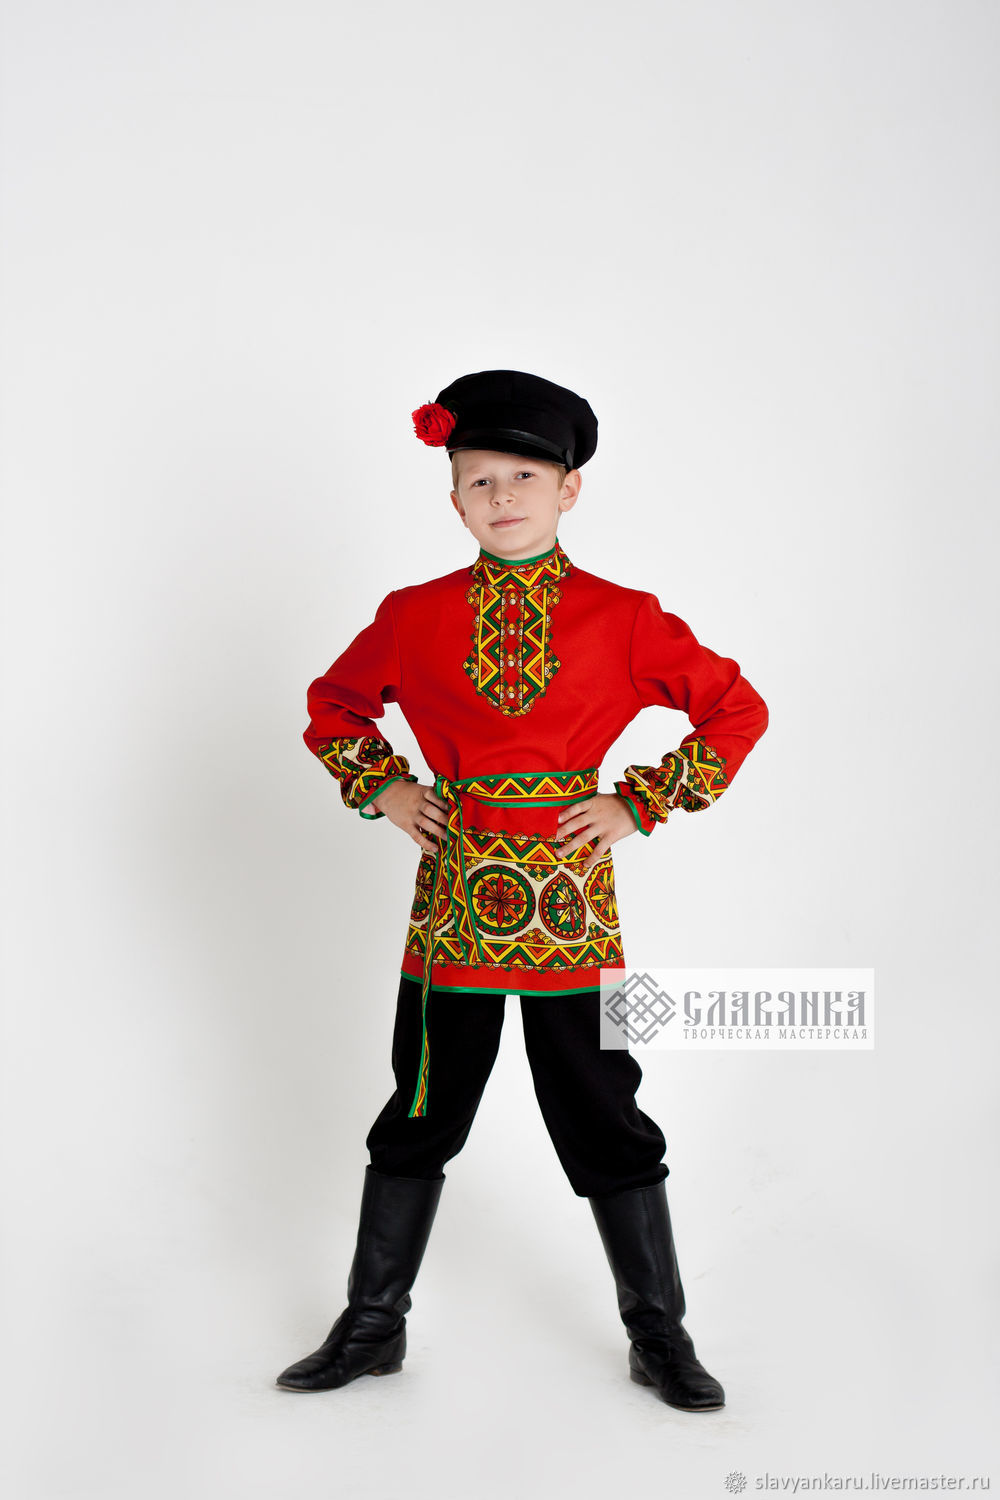 Русские народные костюмы для детей - купить онлайн в malino-v.ru